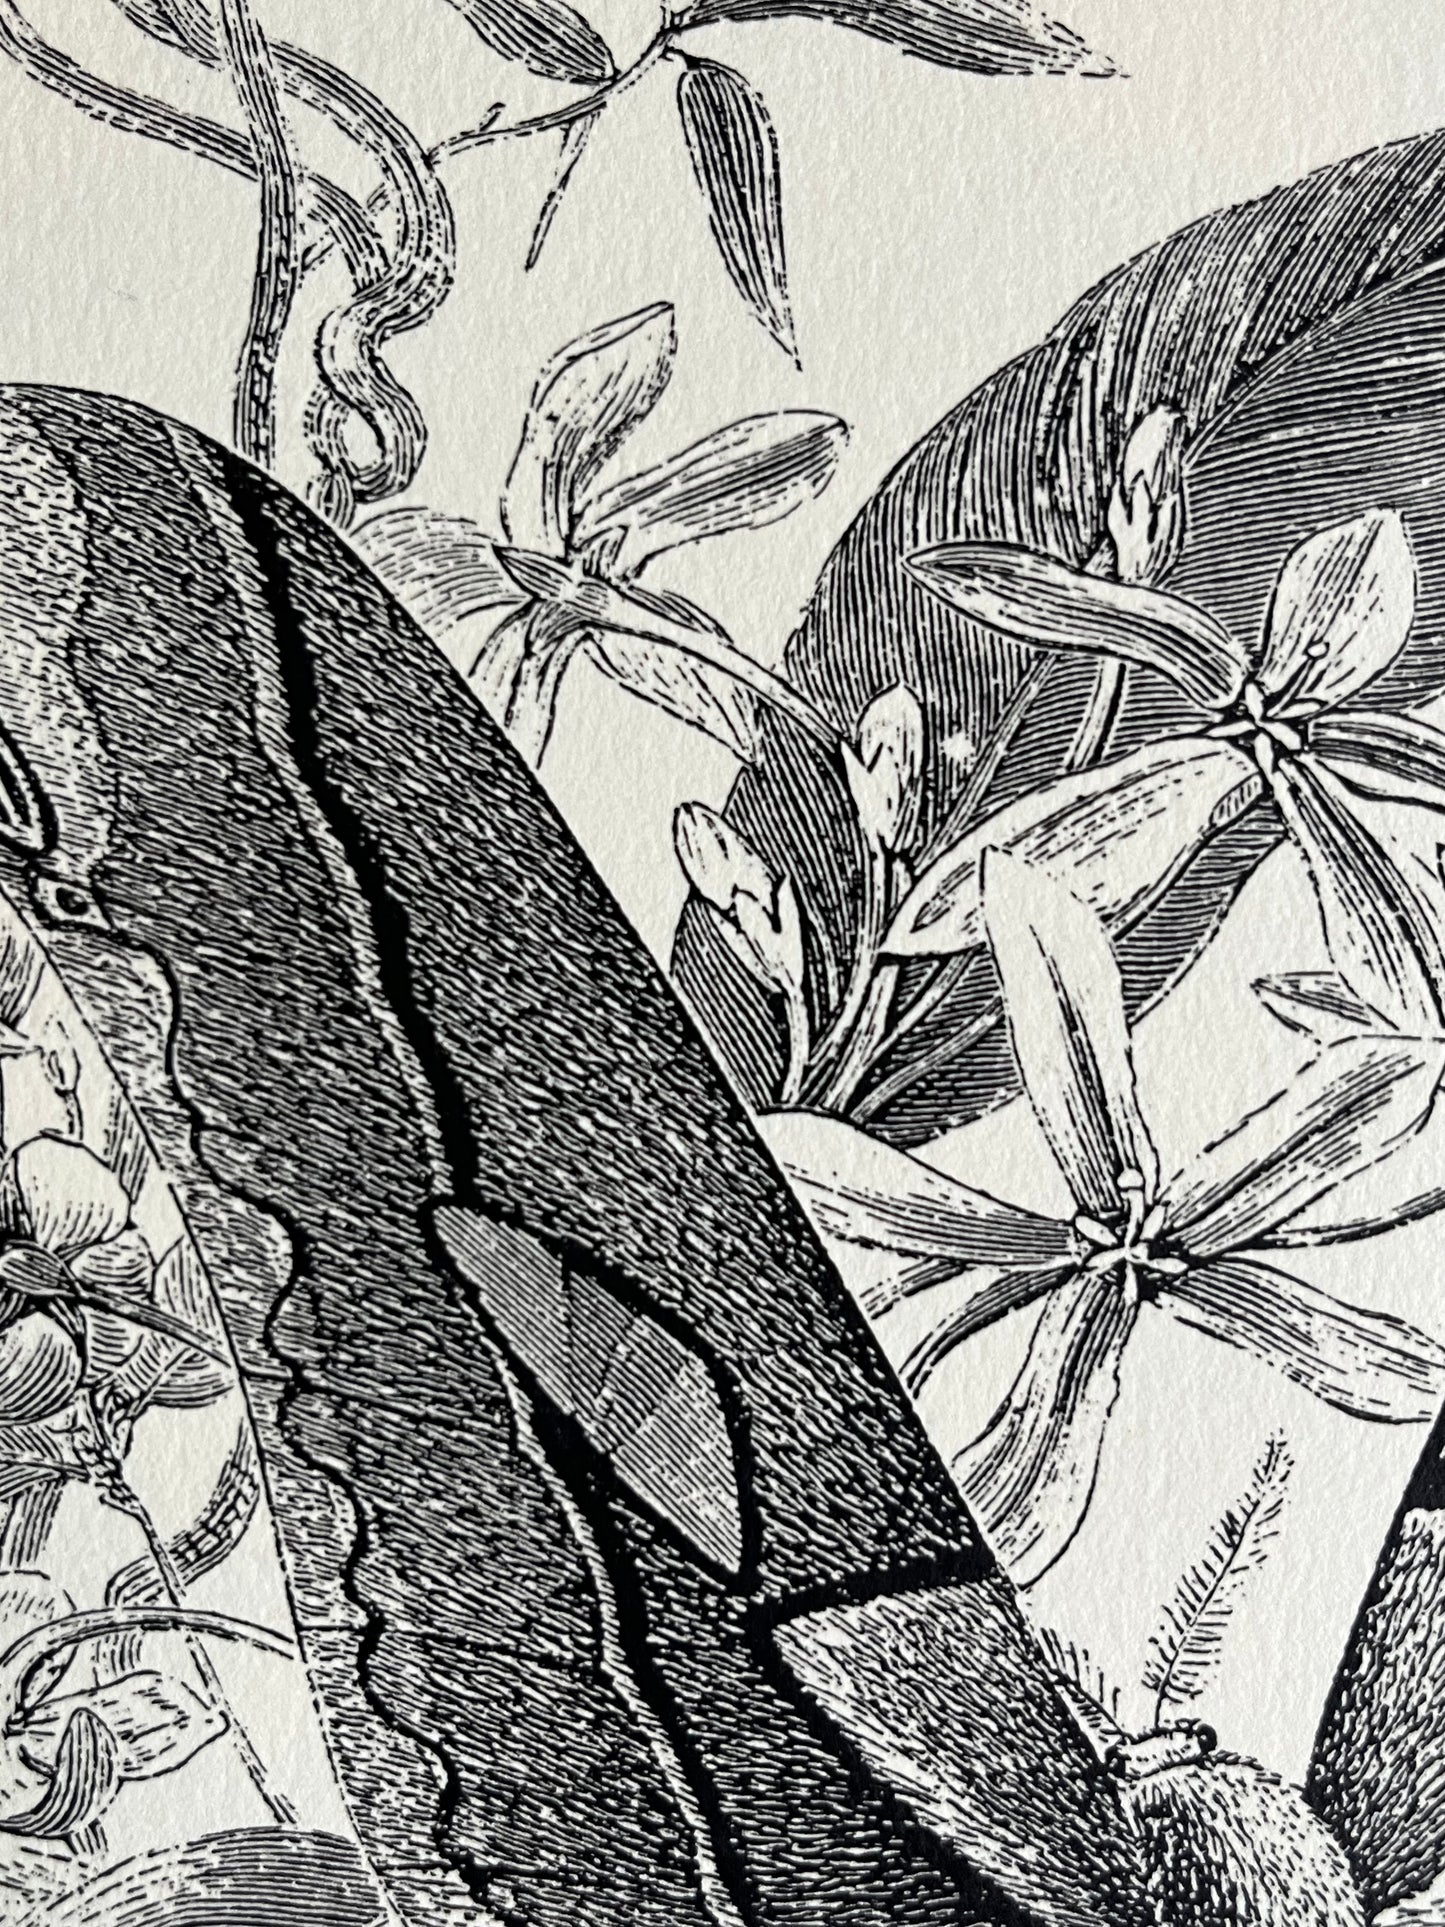 Black & White Butterfly Art Prints, G Pearson